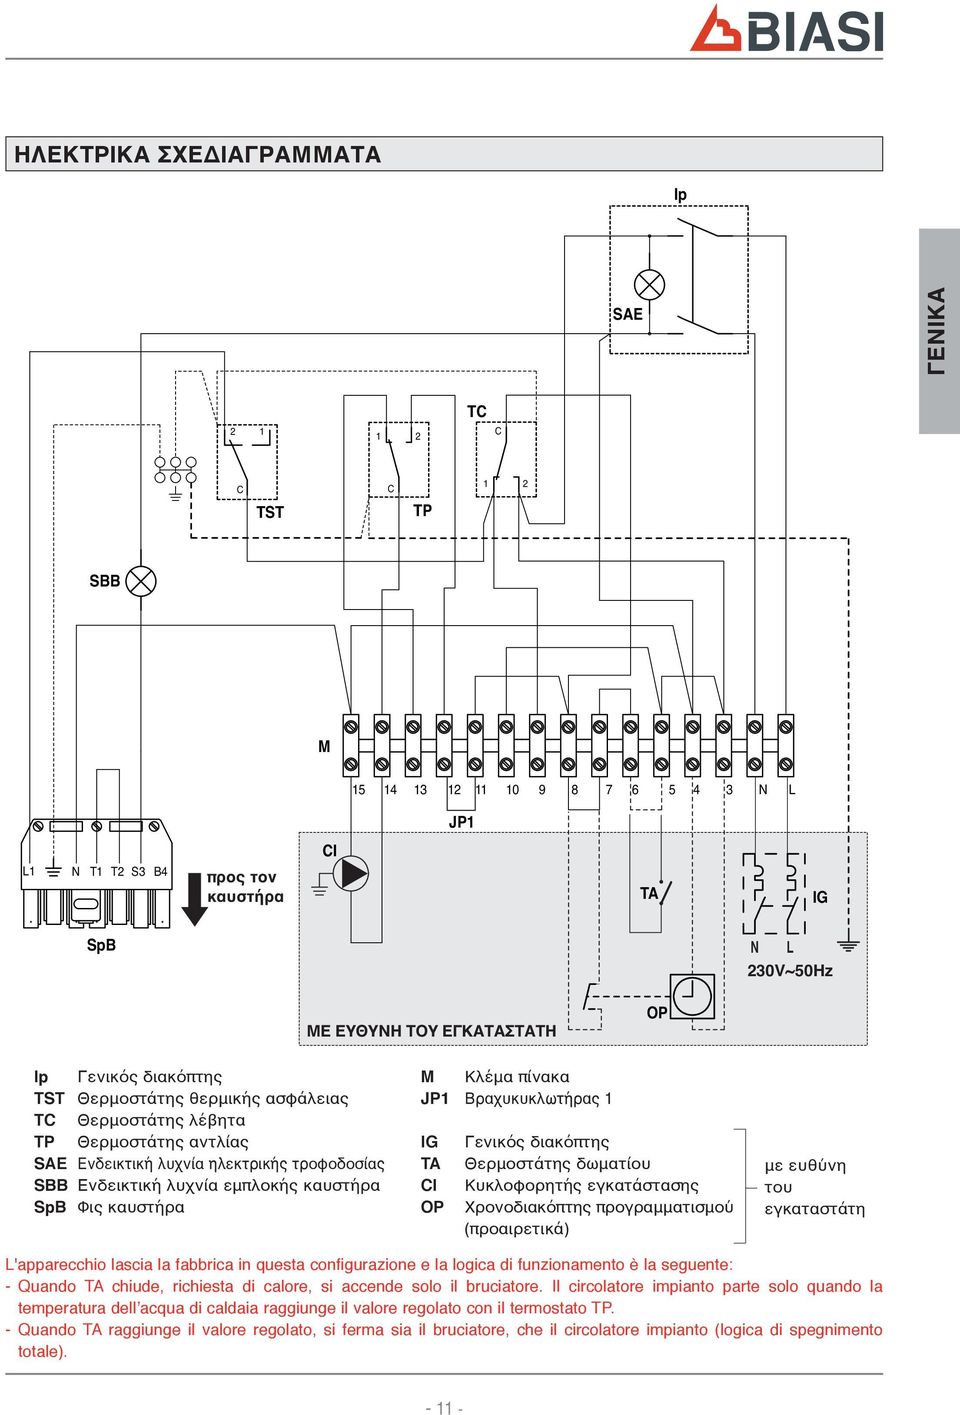 πίνακα JP Βραχυκυκλωτήρας IG TA CI OP Γενικός διακόπτης Θερμοστάτης δωματίου Κυκλοφορητής εγκατάστασης Χρονοδιακόπτης προγραμματισμού (προαιρετικά) με ευθύνη του εγκαταστάτη L'apparecchio lascia la